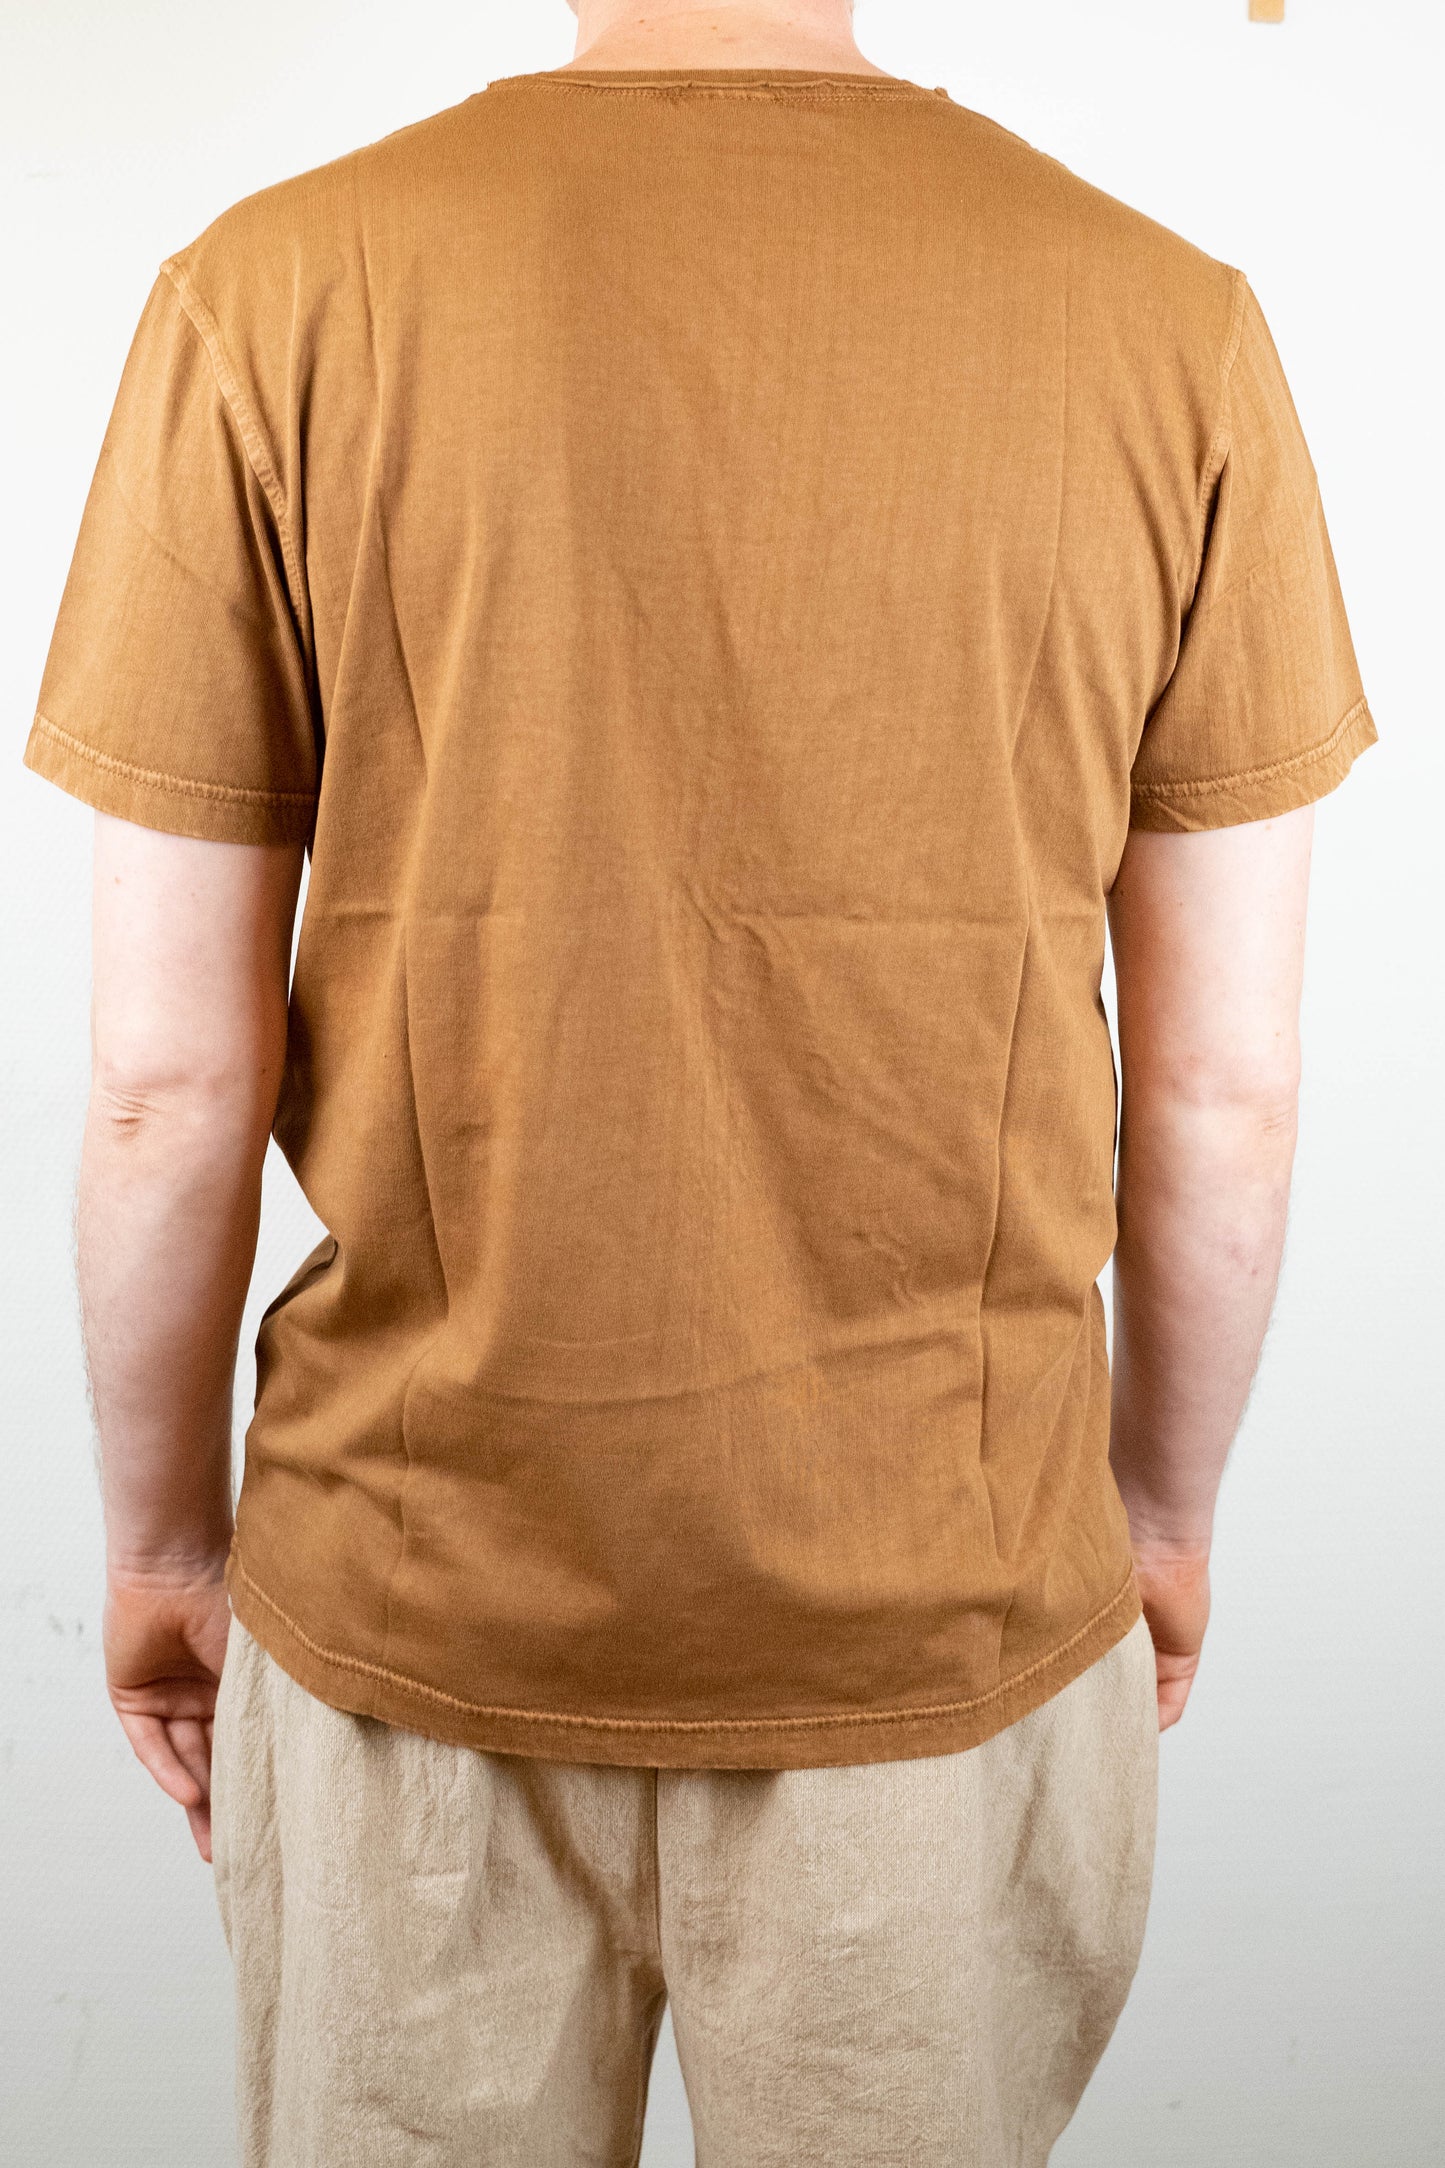 Tshirt - besticktes Design